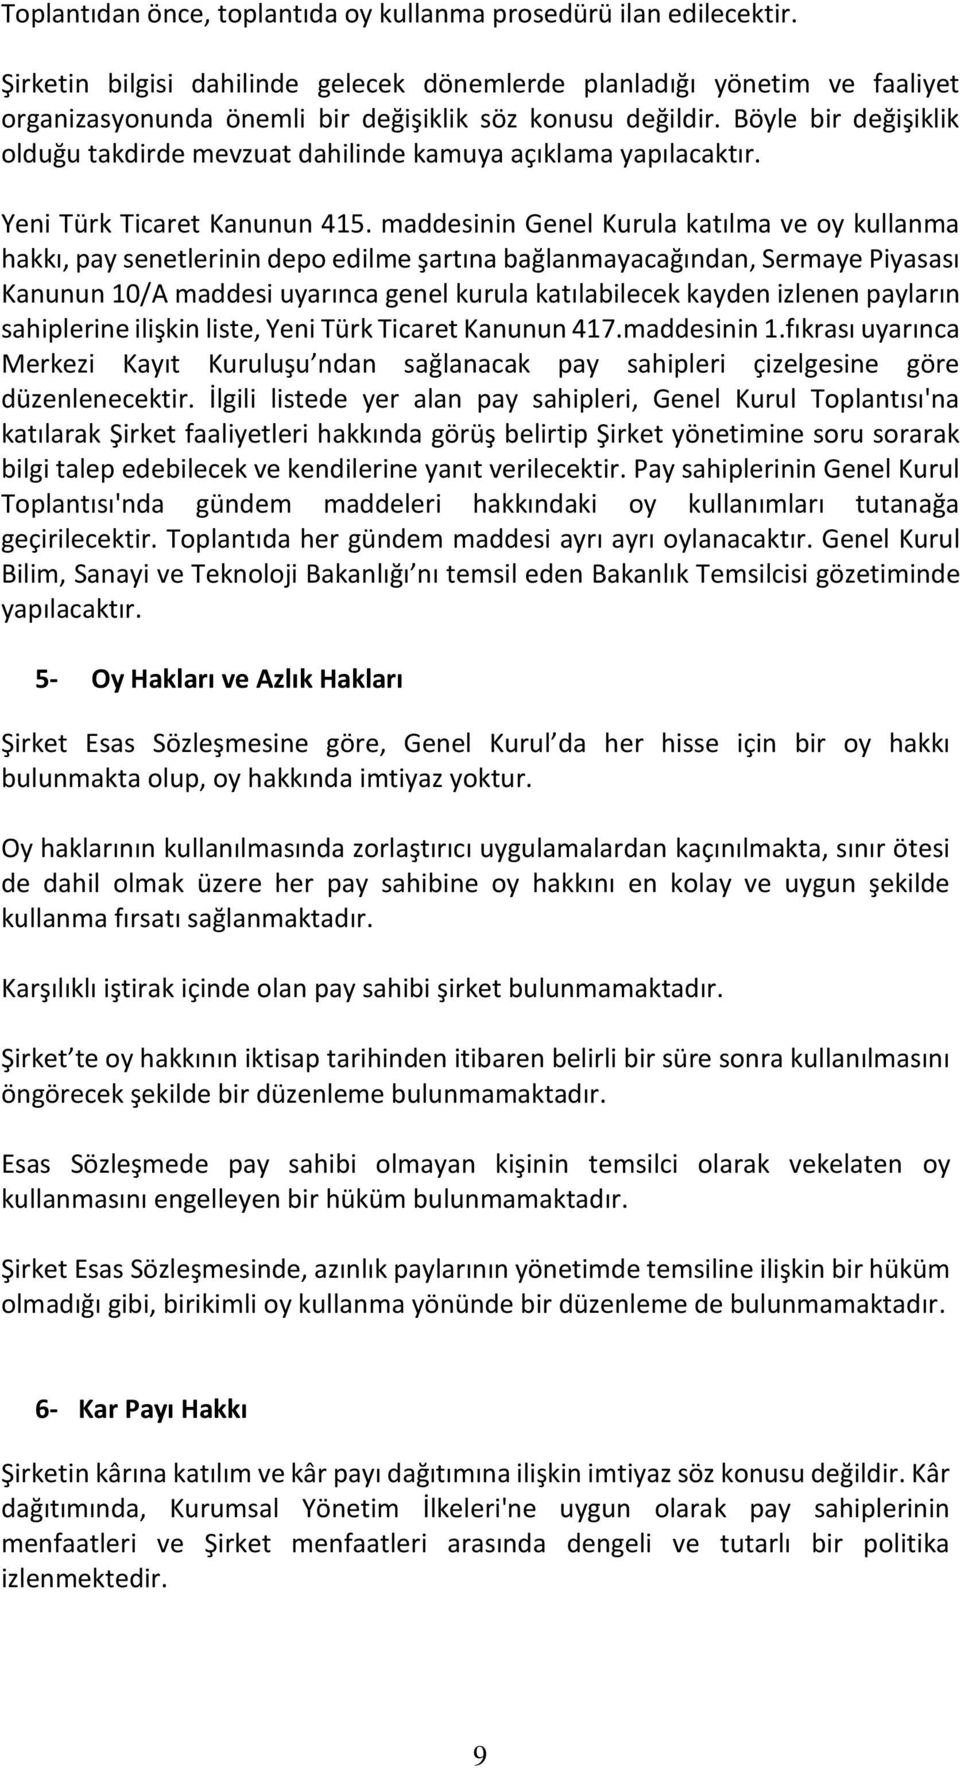 Böyle bir değişiklik olduğu takdirde mevzuat dahilinde kamuya açıklama yapılacaktır. Yeni Türk Ticaret Kanunun 415.